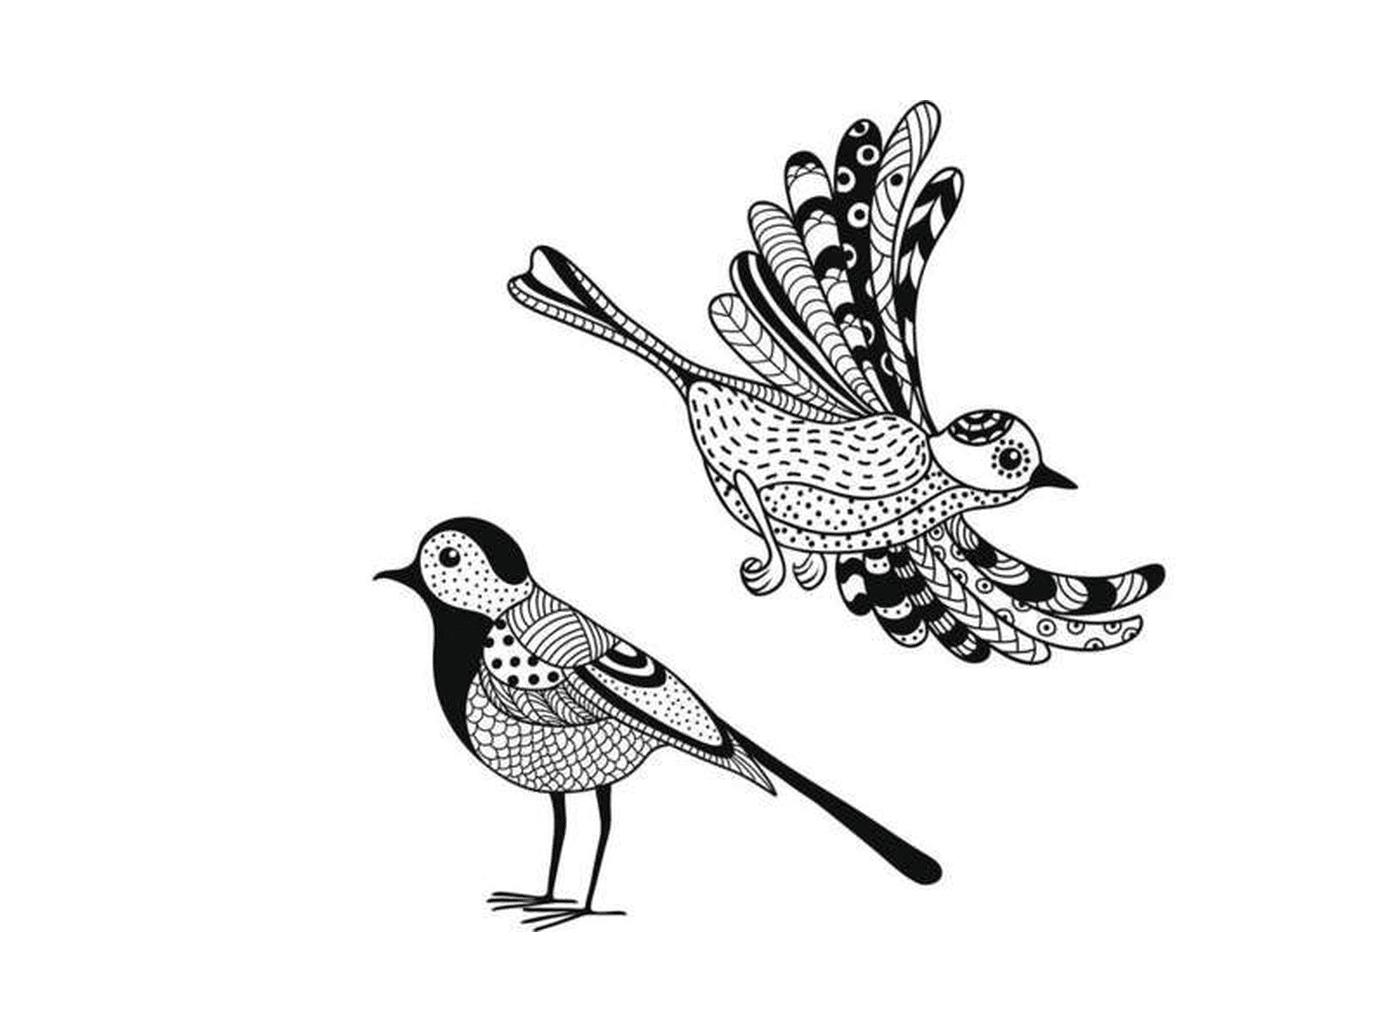  два черно-белых рисунка птицы 